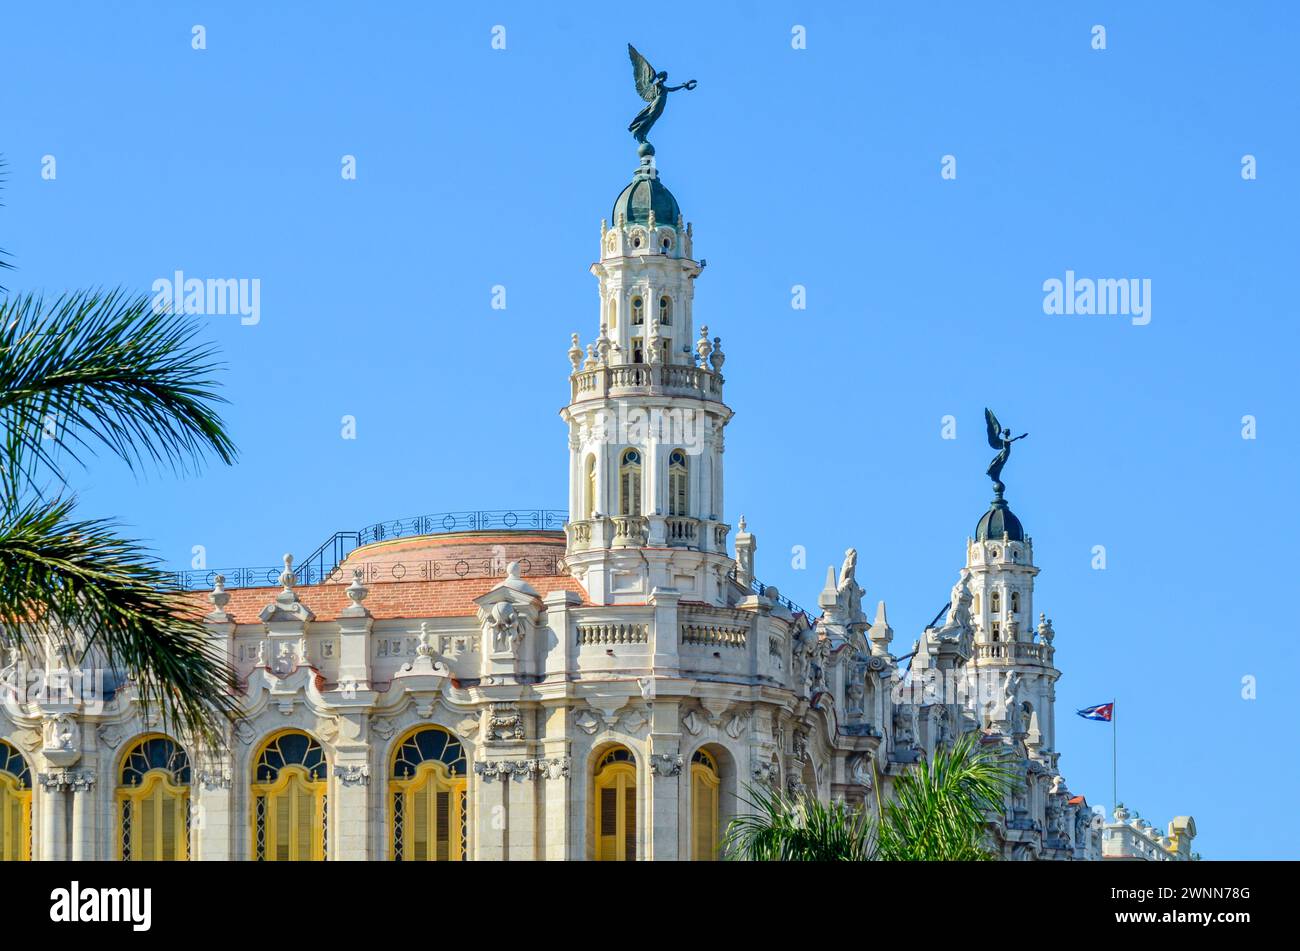 Großes Theater von Havanna, 2 Türme, 2 Engelsstatuen, Kuba Flagge, hellgelbe Fensterläden, Marmorstein, grüne Palmen, blauer Himmel. Stockfoto